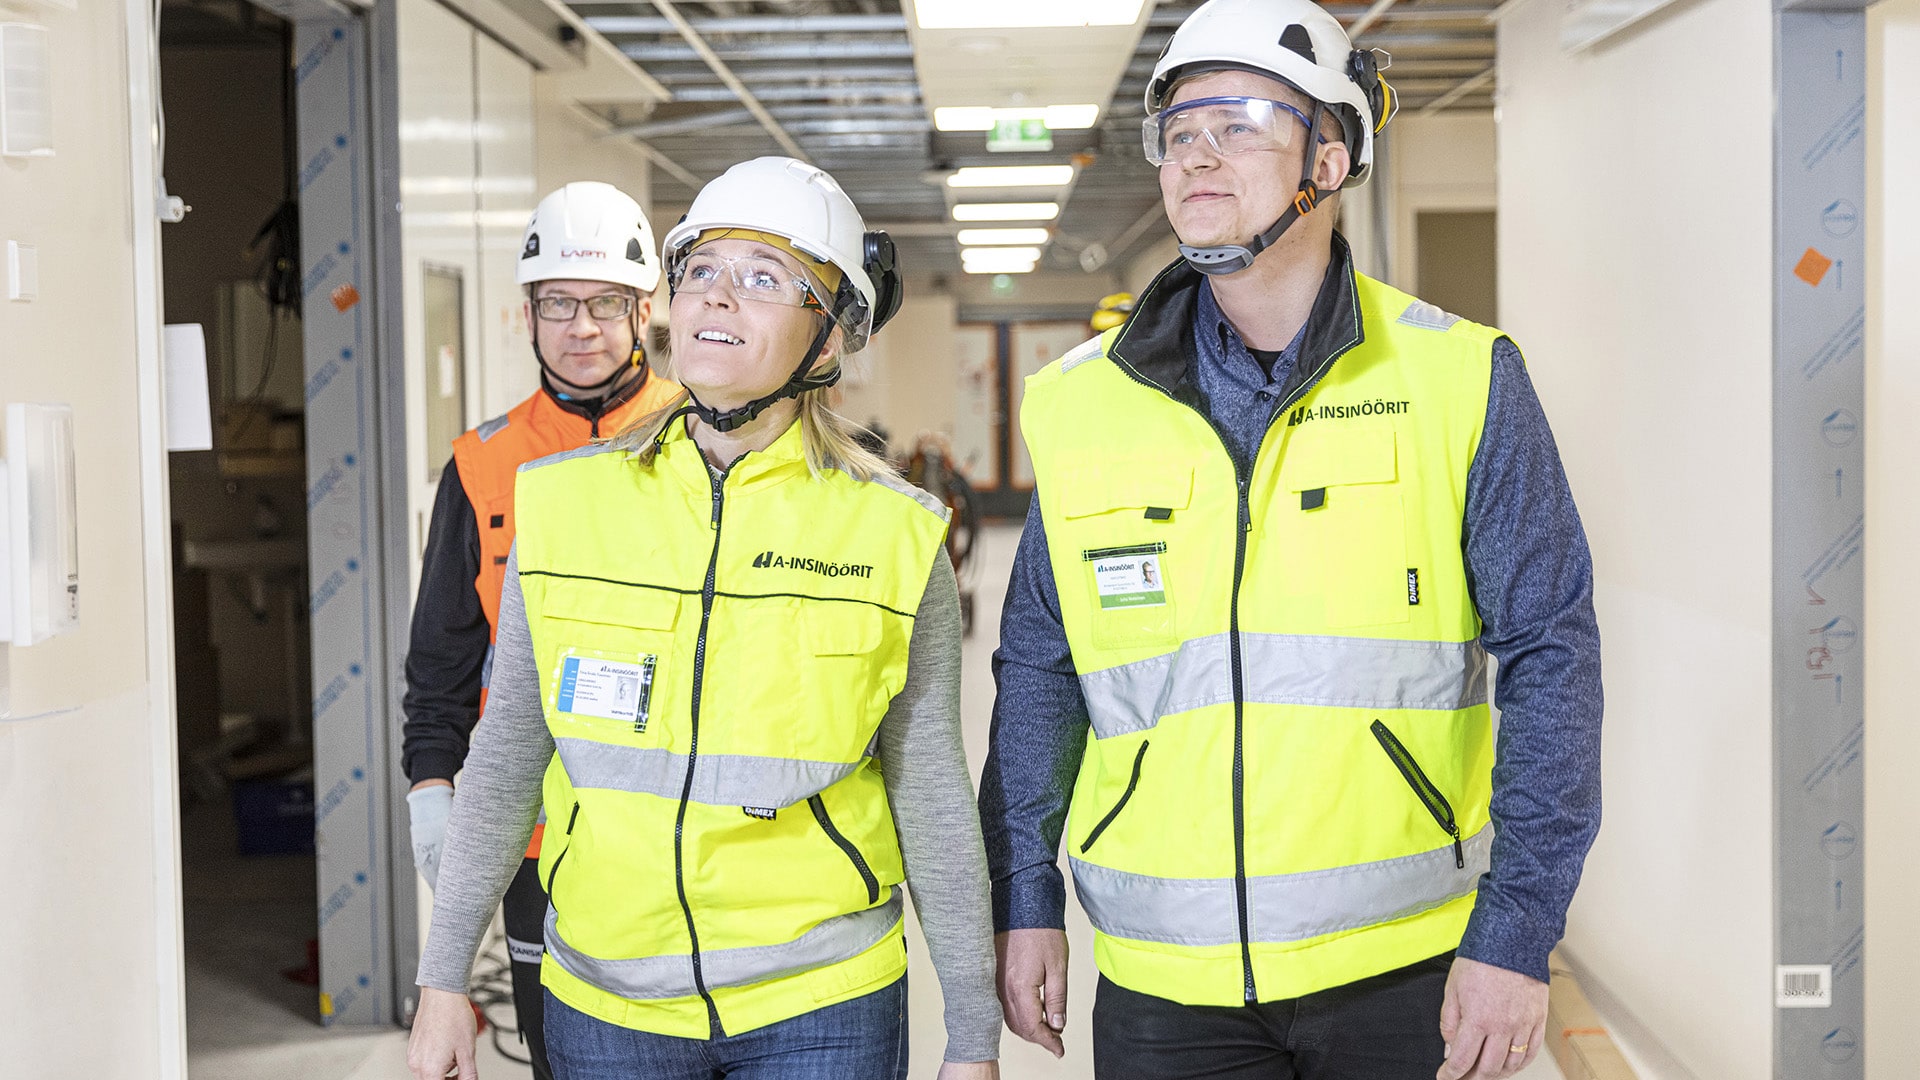 KYSn sairaalauudistus toteutettiin allianssissa. A-Insinöörit vastaa Uusi Sydän -hankkeen rakenne-, elementti- ja geosuunnittelusta, ja on toimi rakennuttajan, Pohjois-Savon sairaanhoitopiirin, rakennuttamiskonsulttina.